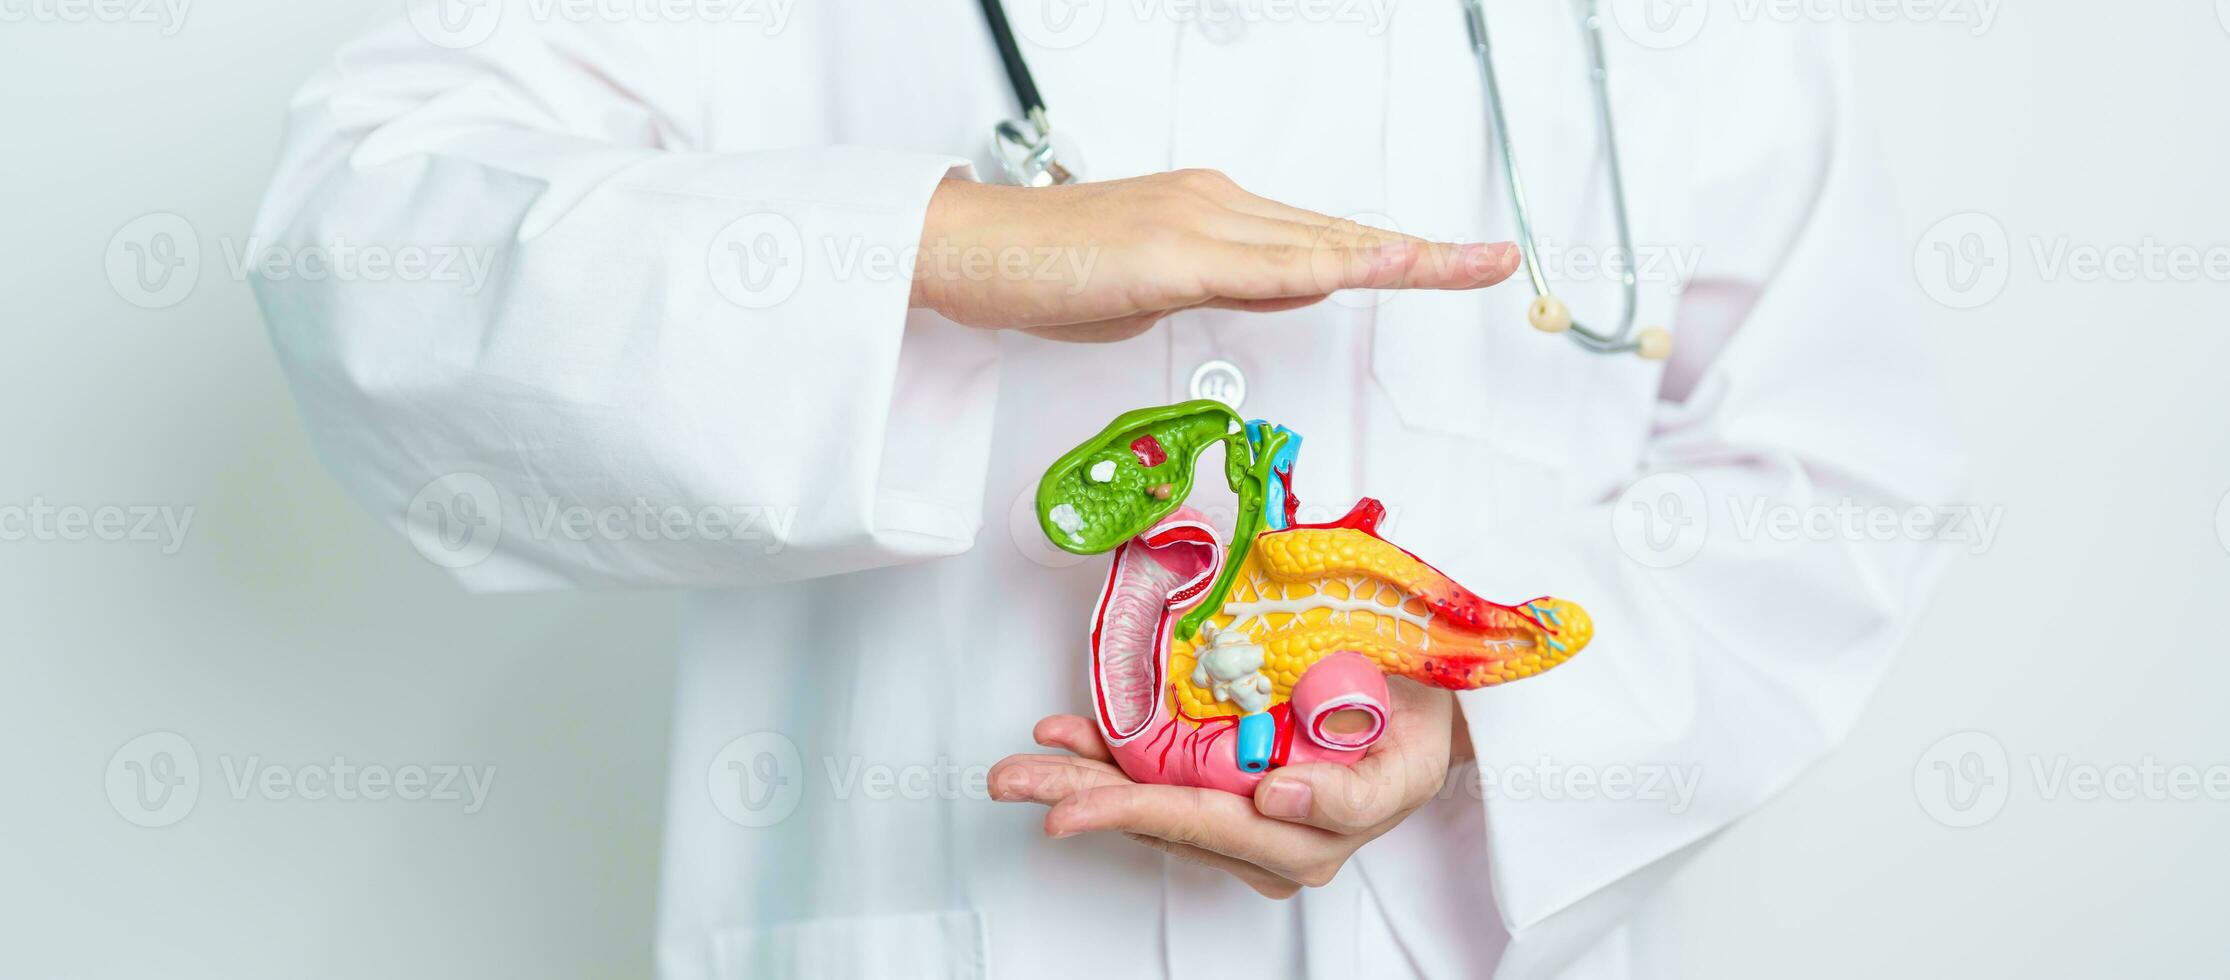 läkare med mänsklig pankreatit anatomi modell med bukspottkörteln, gallblåsan, galla kanal, tolvfingertarmen, små inälvor. pankreas- cancer, akut och kronisk pankreatit, matsmältnings systemet och hälsa begrepp foto